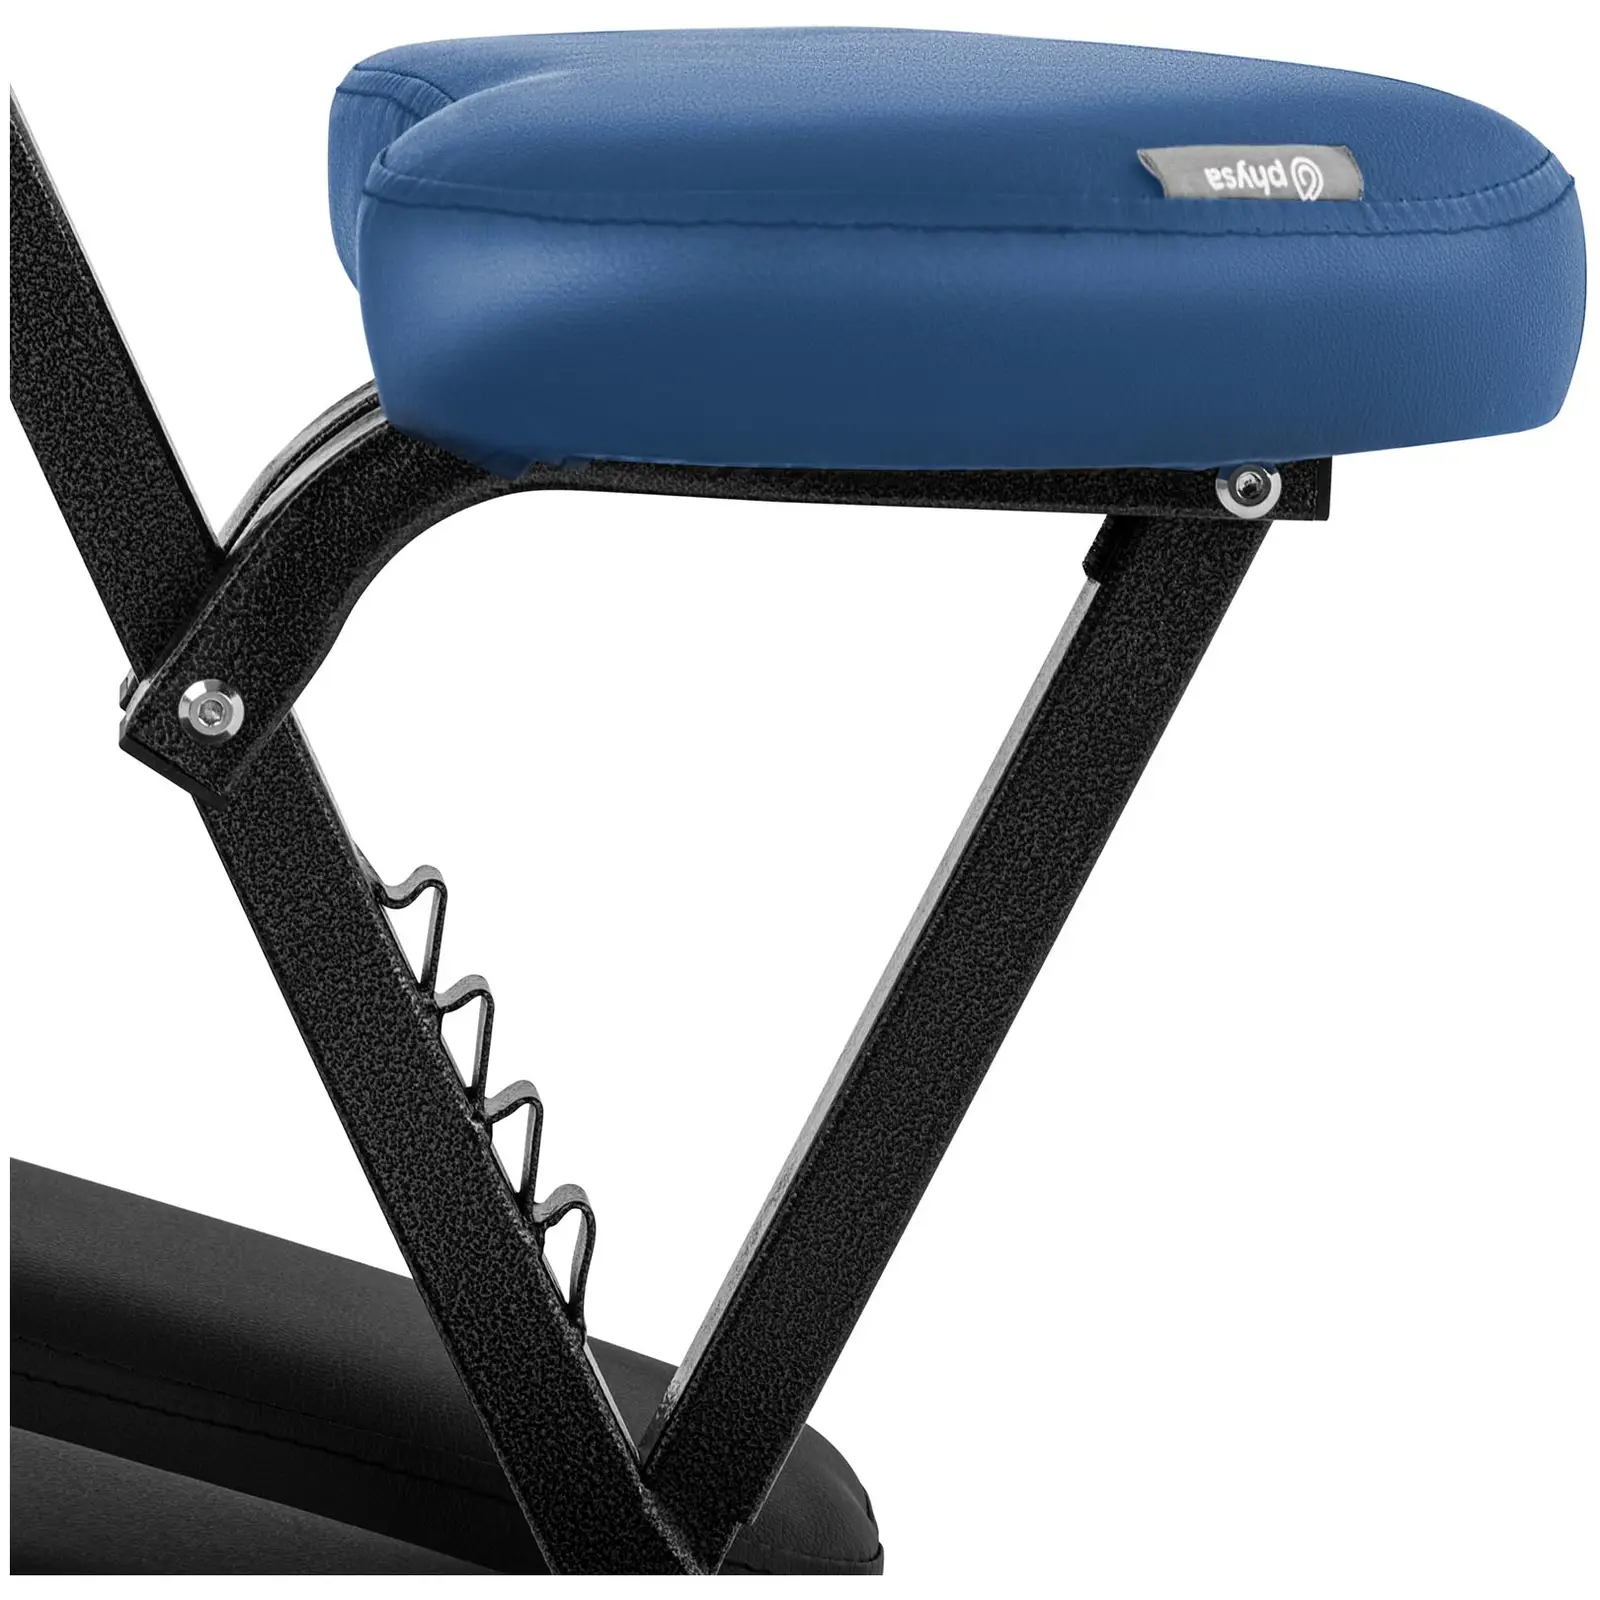 Cadeira de massagem dobrável - 130 kg - Azul